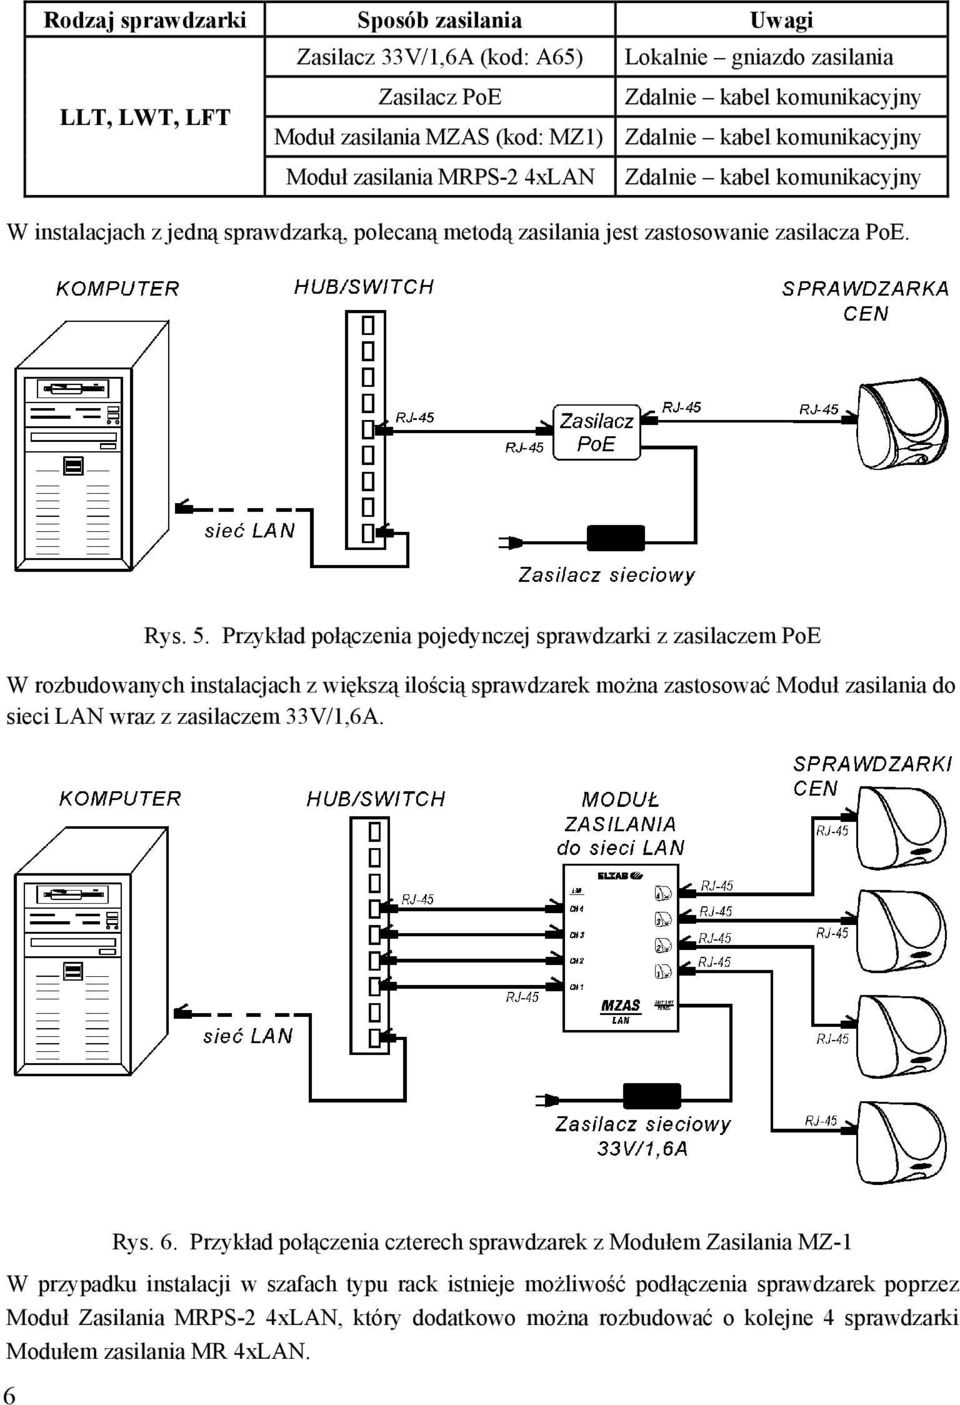 Przykład połączenia pojedynczej sprawdzarki z zasilaczem PoE W rozbudowanych instalacjach z większą ilością sprawdzarek można zastosować Moduł zasilania do sieci LAN wraz z zasilaczem 33V/1,6A. 6 Rys.